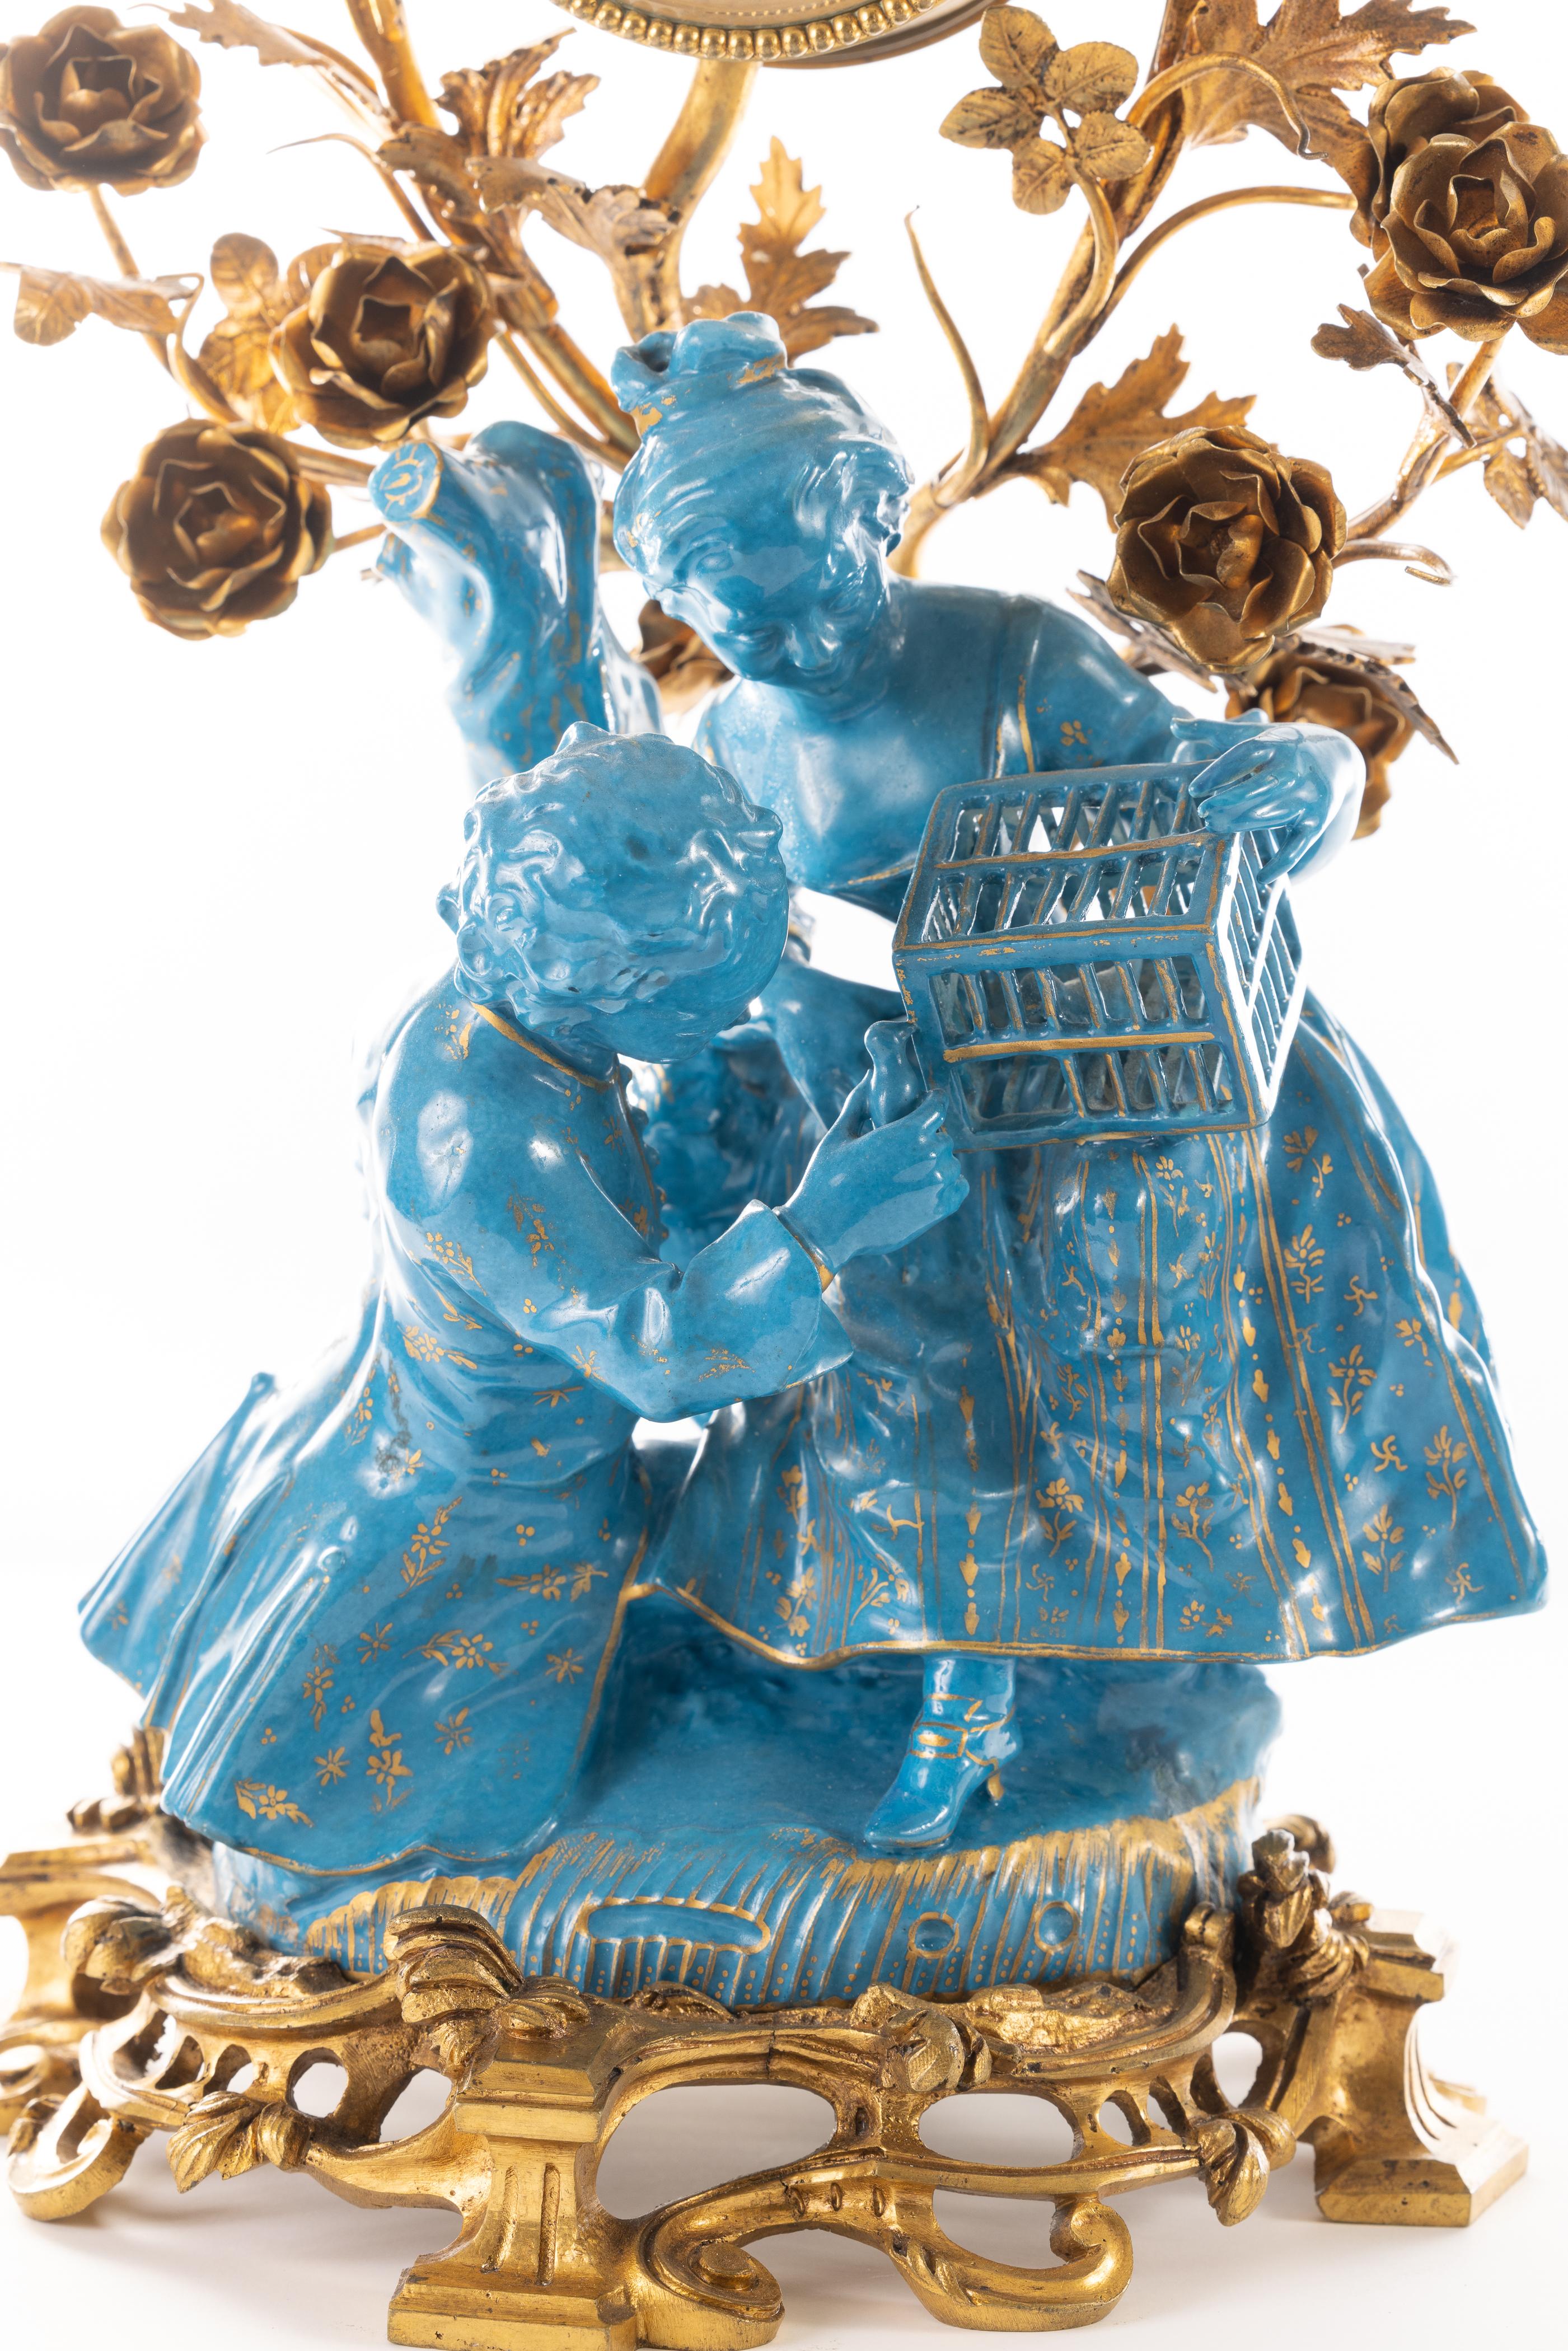 Elegante französische Uhr aus dem 19. Jahrhundert mit vergoldeten türkisfarbenen Porzellanfiguren eines jungen Mannes und einer Frau mit einem eingesperrten Vogel. Die Porzellanfigur ist in gutem Zustand, alle Finger sind intakt. Das Porzellan ist